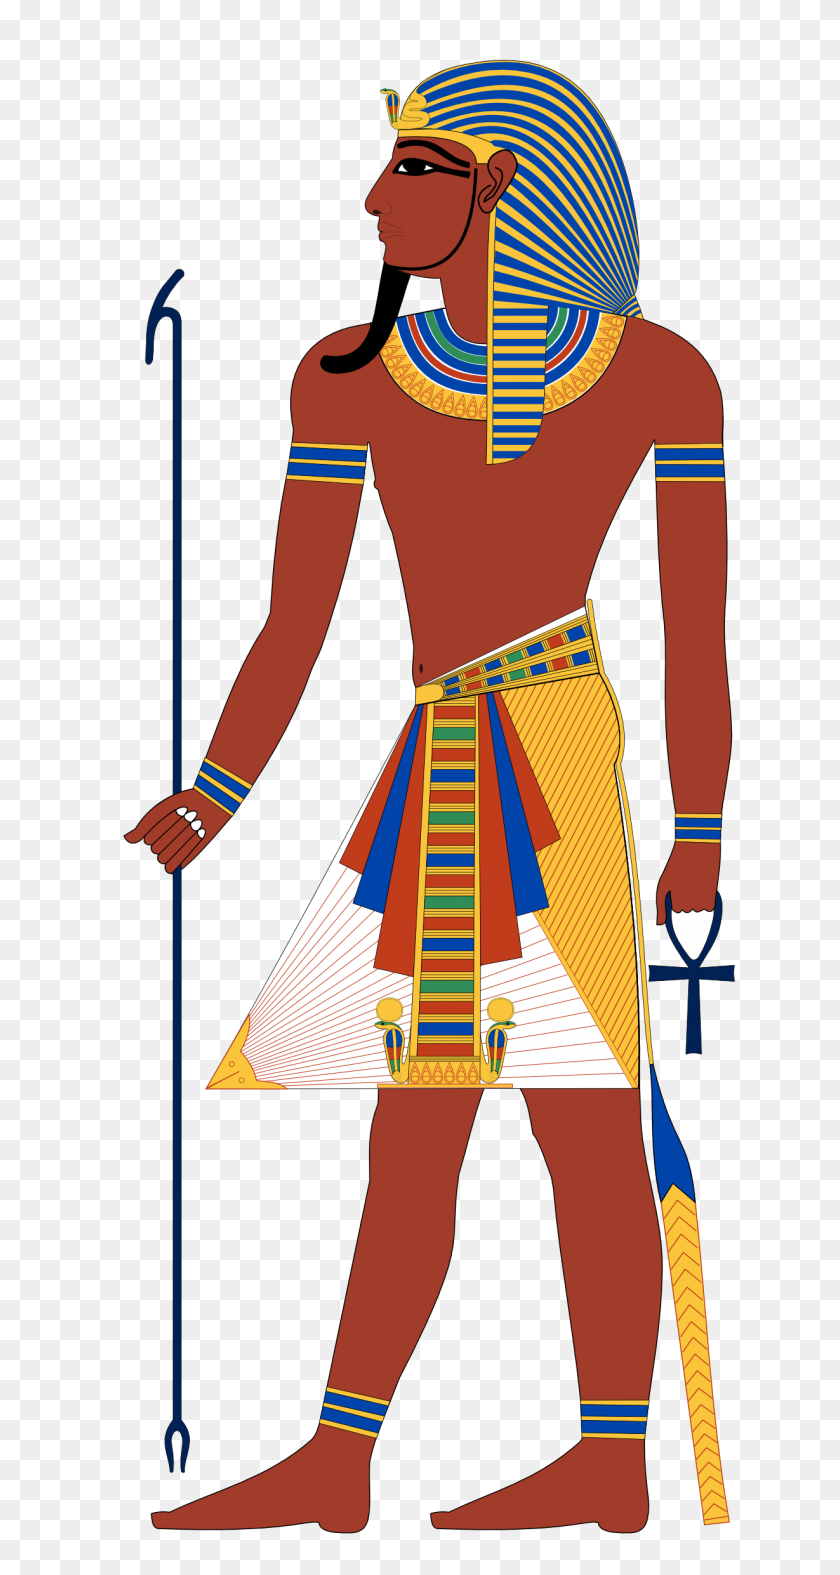 1229x2388 Египет Картинки - 10 Казней Клипарт